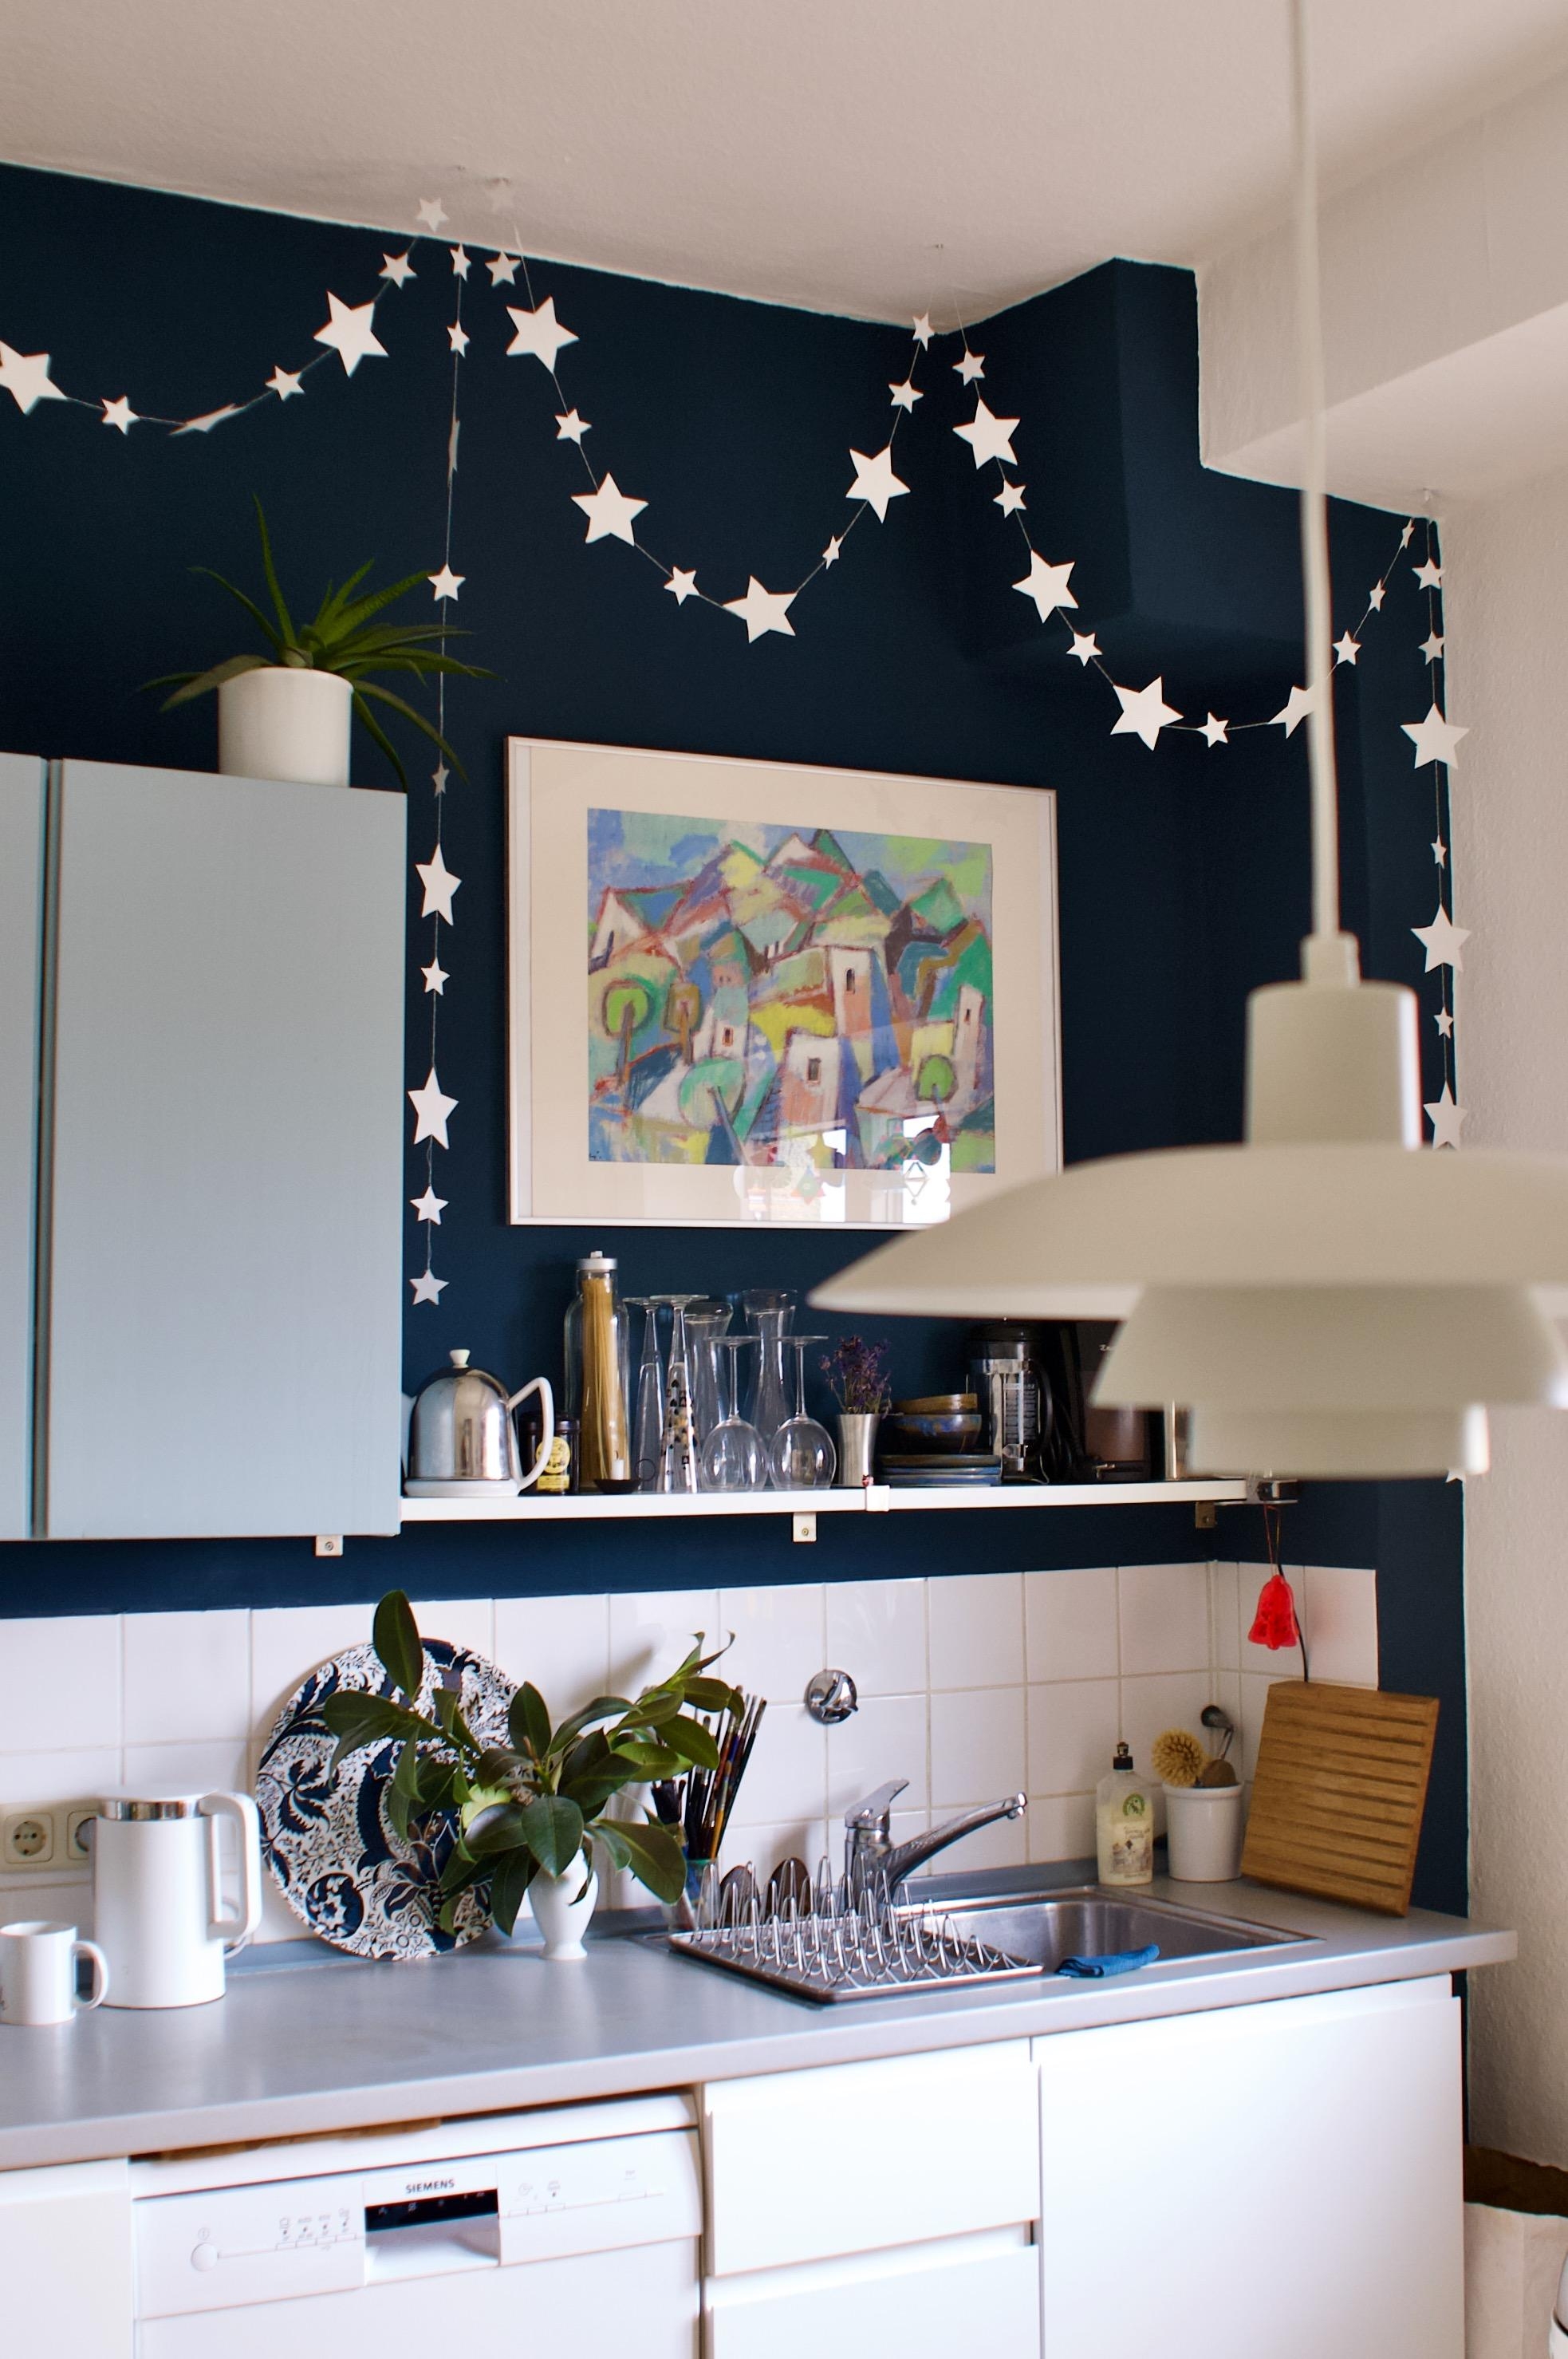 Sterne-Küche
#küche #winterdeko #kitcheninspo
#solangsamwirds